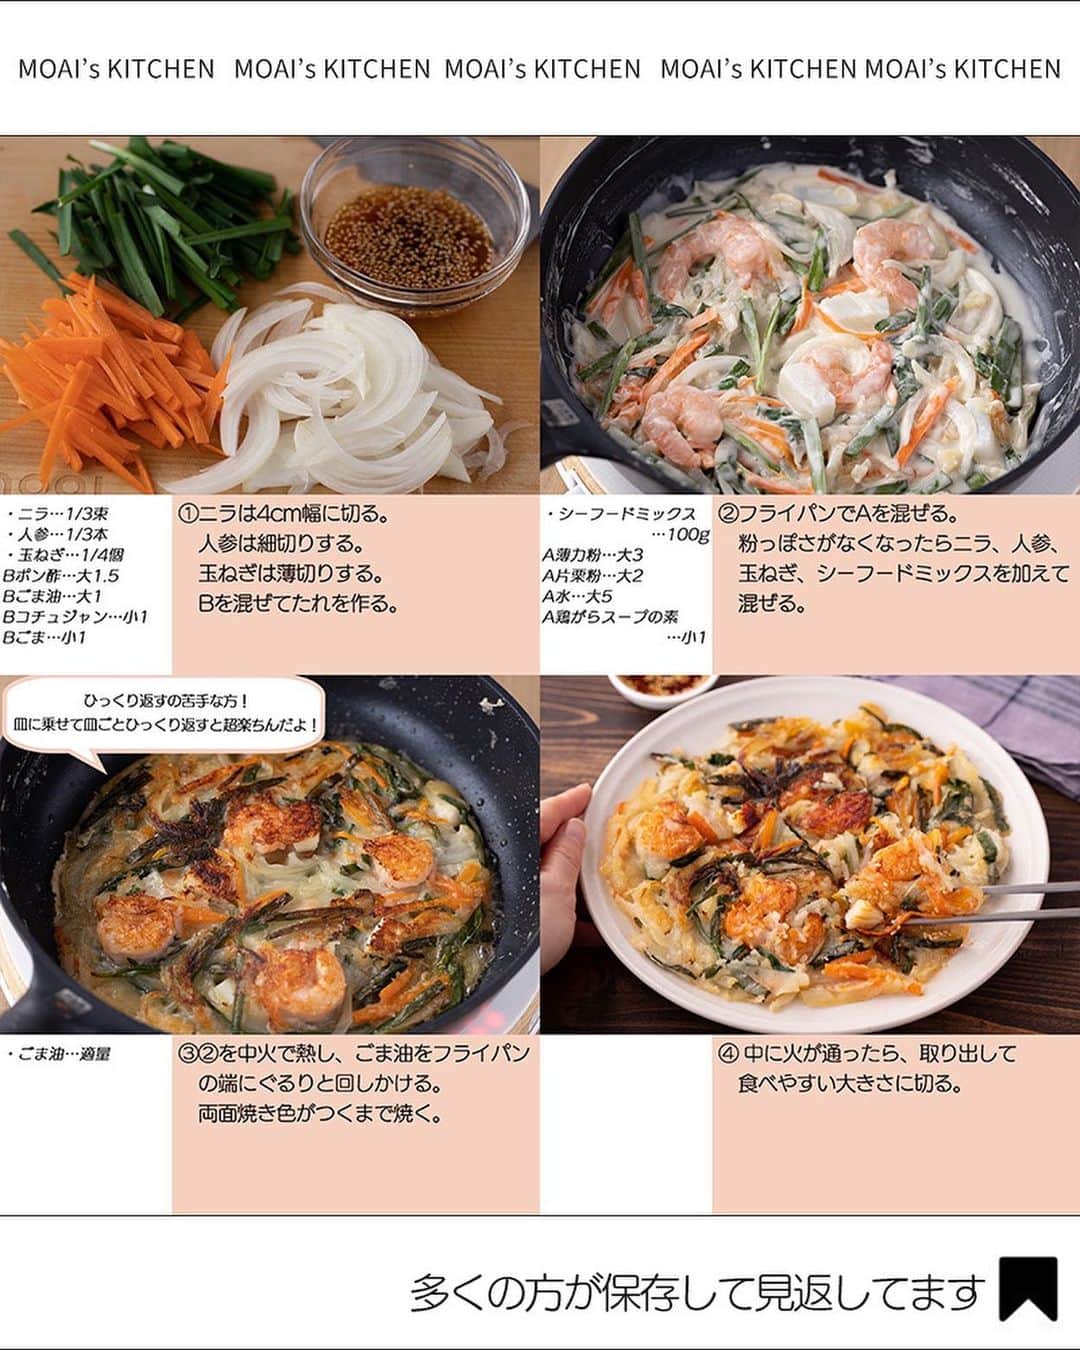 もあいさんのインスタグラム写真 - (もあいInstagram)「レシピ付き ⋆⸜ 韓国料理レシピ4選 ⸝⋆  コメントでみんなとお話したいです😭💕💕💕 些細なことでもお待ちしてます！  ⋈・。・。⋈・。・。⋈・。・。⋈ ・。・。⋈  ようこそ٩(^‿^)۶ Ⓜ︎ⓄⒶⒾ🅢ⓀⒾⓉⒸⒽⒺⓃ 𓎩へ こんばんは、もあいです︎ 𓇚  ピリ辛おいしい韓国料理♪ 自分でもよく作るしお店でもよく食べます！ おすすめ4品まとめたので、ぜひ試してみてくださいね😊  ♔∴∵∴♔∴∵∴♔∴∵∴♔∴∵∴♔∴∵∴♔∴∵∴♔  右上の保存ボタンを押して あとでゆっくり見返してくださいね♡  #OL仕事めし #働楽ごはん #モアイズキッチン  ✍︎ recipe① 〰〰〰〰 ⋆⸜ 簡単チーズプデチゲ ⸝⋆  ✿ 材料(2人分)   ・インスタントラーメン…1袋 ・キムチ…80g ・ソーセージ…4本 ・えのき…30g ・豆腐…100g ・青ネギ…3本 ・ピザ用チーズ…30g ・ごま油…大さじ1/2 おろしにんにく…小さじ1 おろし生姜…小さじ1  A水…400ml A鶏ガラスープの素…小さじ1 Bコチュジャン…大さじ1  B味噌…小さじ2 Bみりん…小さじ1 Bすりごま…小さじ1  ✿ 作り方  ①鍋にごま油、すりおろし生姜・ 　にんにくを入れ弱火で熱する。 　香りがたってきたらキムチを加え 　中火で炒める。  ②えのきは石付きをとってほぐし、 　ソーセージは斜め半分に切る。 　豆腐はスプーンですくいながら 　加え、一混ぜする。  ③Aを加え一煮立ちさせたら 　合わせたBを溶かし加える。 ④インスタントラーメンを入れ 　ほぐれ始めたらチーズを加えて 　好みの硬さまで煮込む。  　小口切りにした青ネギを仕上げに 　トッピングする。  ✍︎ recipe② 〰〰〰〰 ⋆⸜ キムチーズキンパ ⸝⋆ 難易度 ✭✭✩　≀ ◷ 15 分　92円/人  ✿材料（1本分）  ・ご飯…200g ・キムチ…50g ・ツナ(油漬け)…1缶(70g) A焼肉のたれ…小2 Aごま油…小1 Aごま…少々 ・ピザ用チーズ…適量 ・海苔(全形)…1枚  ✿作り方  ①キッチンバサミでキムチを小さく切る。 　ボウルでご飯、キムチ、油を切った 　ツナ、Aと混ぜ合わせる。  ②ラップの上に海苔をのせ、①を 　敷き詰め、ピザ用チーズを乗せる。 　海苔の上１cmは残しておく。  ③ラップでのの字巻きにする。 　巻き終わりはサイドから具が 　はみ出るので指で押し戻しておく。  ④少し休ませて落ち着いてきたら、 　濡れた包丁でカットして耐熱皿に 　並べる。レンジで６００Wで 　２分加熱する。 ※１回切るごとにキッチンペーパーで 　汚れを落としながらすると切りやすいです  ✍︎ recipe③ 〰〰〰〰 ⋆⸜ 中毒 モチーズタッカルビ ⸝⋆ 難易度 ✭✭✩ ≀ ◷ 作業時間15 分 ≀ 241円/人  ✿材料(2人分)  ・鶏もも肉…1枚 ・もち…4個 ・ニラ…1/2束 ・しめじ…1/2袋 ・キャベツ…1/4個 ・キムチ…100g ・ごま油…適量 A焼肉のたれ…大3 Aコチュジャン…大1 A醤油…大1/2 A砂糖…小2 Bピザ用チーズ…120g B牛乳…大3 B片栗粉…大1  ✿作り方   ①鶏もも肉は一口大に切り、大きめの 　ボウルに入れAとキムチに１０分 　漬け込んでおく。  ②キャベツはざく切り。 　しめじは石づきを取りバラす。 　ニラは４cm幅に切る。 　①に入れて混ぜる。  ③フライパンをごま油で中火で熱し、 　②を炒める。肉の色が変わったら 　もちを加えて蓋をして４分蒸し焼き 　にする。  ④ボウルでBを混ぜ、チーズソースを 　作る。③の具材を両端に寄せ、 　真ん中ににチーズソースを流し入れる。 　チーズが溶けるまで加熱する。  ✍︎ recipe④ 〰〰〰〰 ⋆⸜ 海鮮チヂミ ⸝⋆ 難易度 ✭✭✩　≀ ◷ 15 分 114円/人  ✿材料（2人分）  ・シーフードミックス…100g ・ニラ…1/3束 ・人参…1/3本 ・玉ねぎ…1/4個 ・ごま油…適量 A薄力粉…大3 A片栗粉…大2 A水…大5 A鶏がらスープの素…小1 Bポン酢…大1.5 Bごま油…大1 Bコチュジャン…小1 Bごま…小1  ✿作り方  ①ニラは4cm幅に切る。 　人参は細切りする。 　玉ねぎは薄切りする。 　Bを混ぜてたれを作る。  ②フライパンでAを混ぜる。 　粉っぽさがなくなったらニラ、人参、 　玉ねぎ、シーフードミックスを加えて 　混ぜる。  ③②を中火で熱し、ごま油をフライパン 　の端にぐるりと回しかける。 　両面焼き色がつくまで焼く。 ※ひっくり返すの苦手な方！ 　皿に乗せて皿ごとひっくり返すと超楽ちんだよ！  ④ 中に火が通ったら、取り出して 　食べやすい大きさに切る。  ♔∴∵∴♔∴∵∴♔∴∵∴♔∴∵∴♔∴∵∴♔∴∵∴♔  ✿お知らせ  🍳キッチンブランド【moai】発売中 📕#がんばらなくてもできるおいしいすぐレシピ 発売中 （Amazon、楽天ランキング１位獲得）  @moaiskitchen TOPのURLからもご覧になれます！」5月18日 17時00分 - moaiskitchen